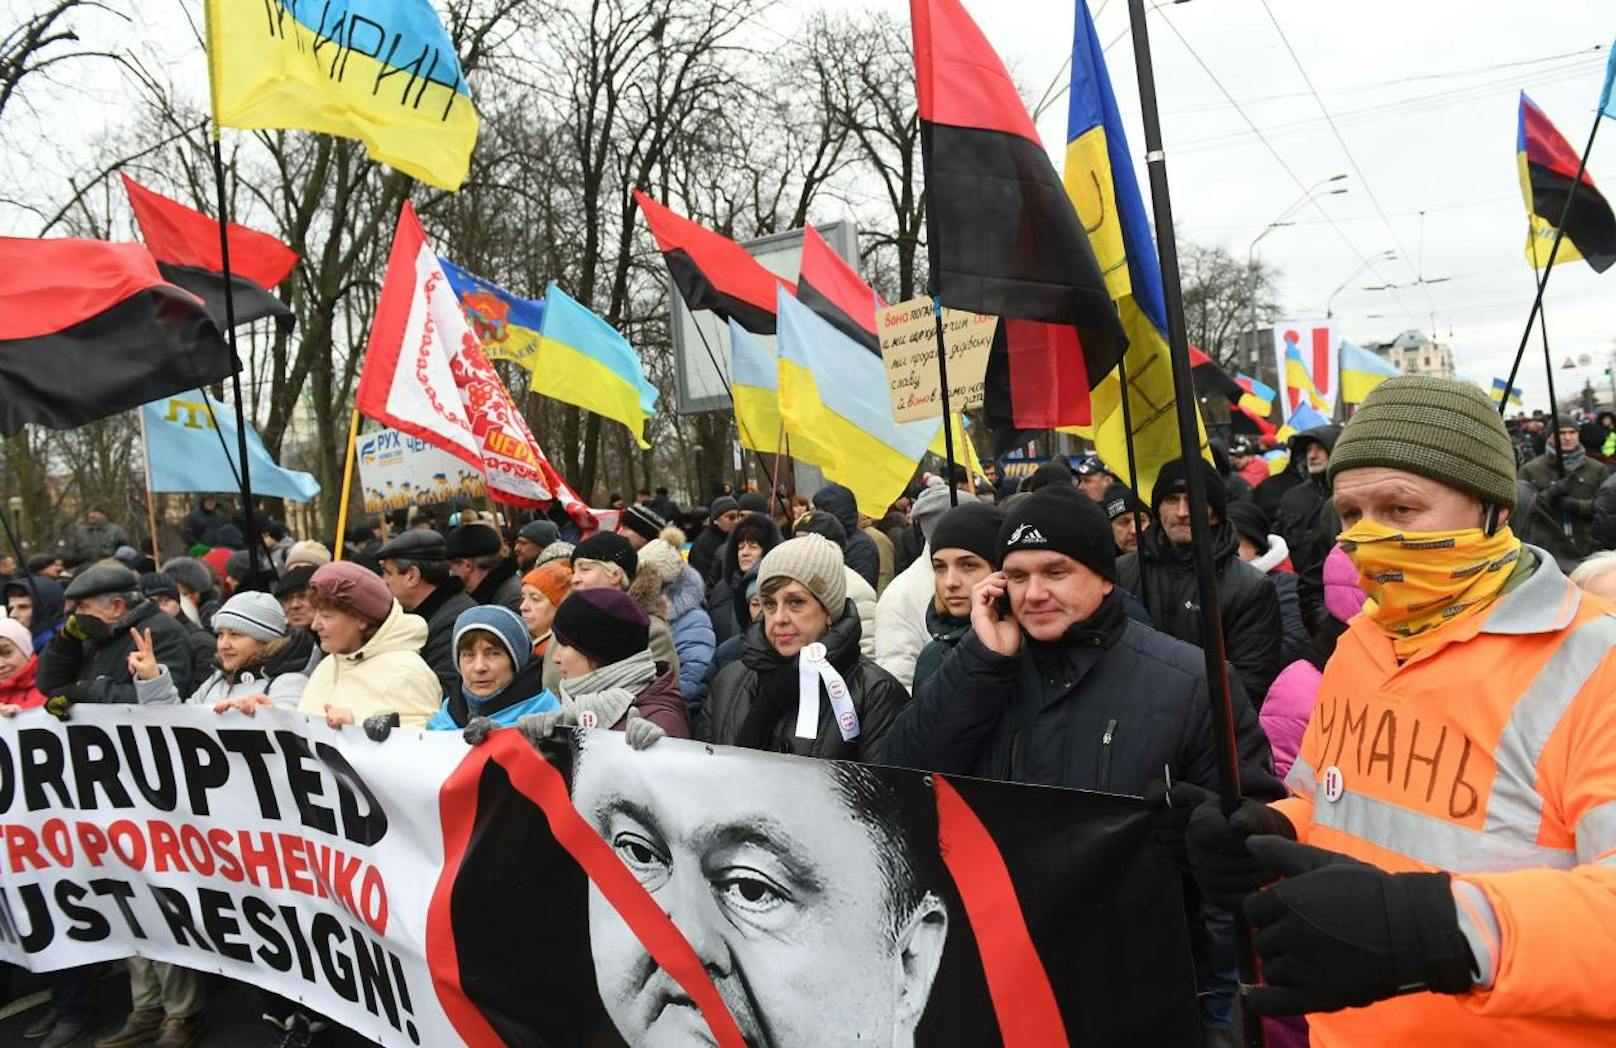 Zwar sind in Wien keine Demonstrationen gegen Poroschenko angemeldet, doch in der Ukraine brodelt die Stimmung.